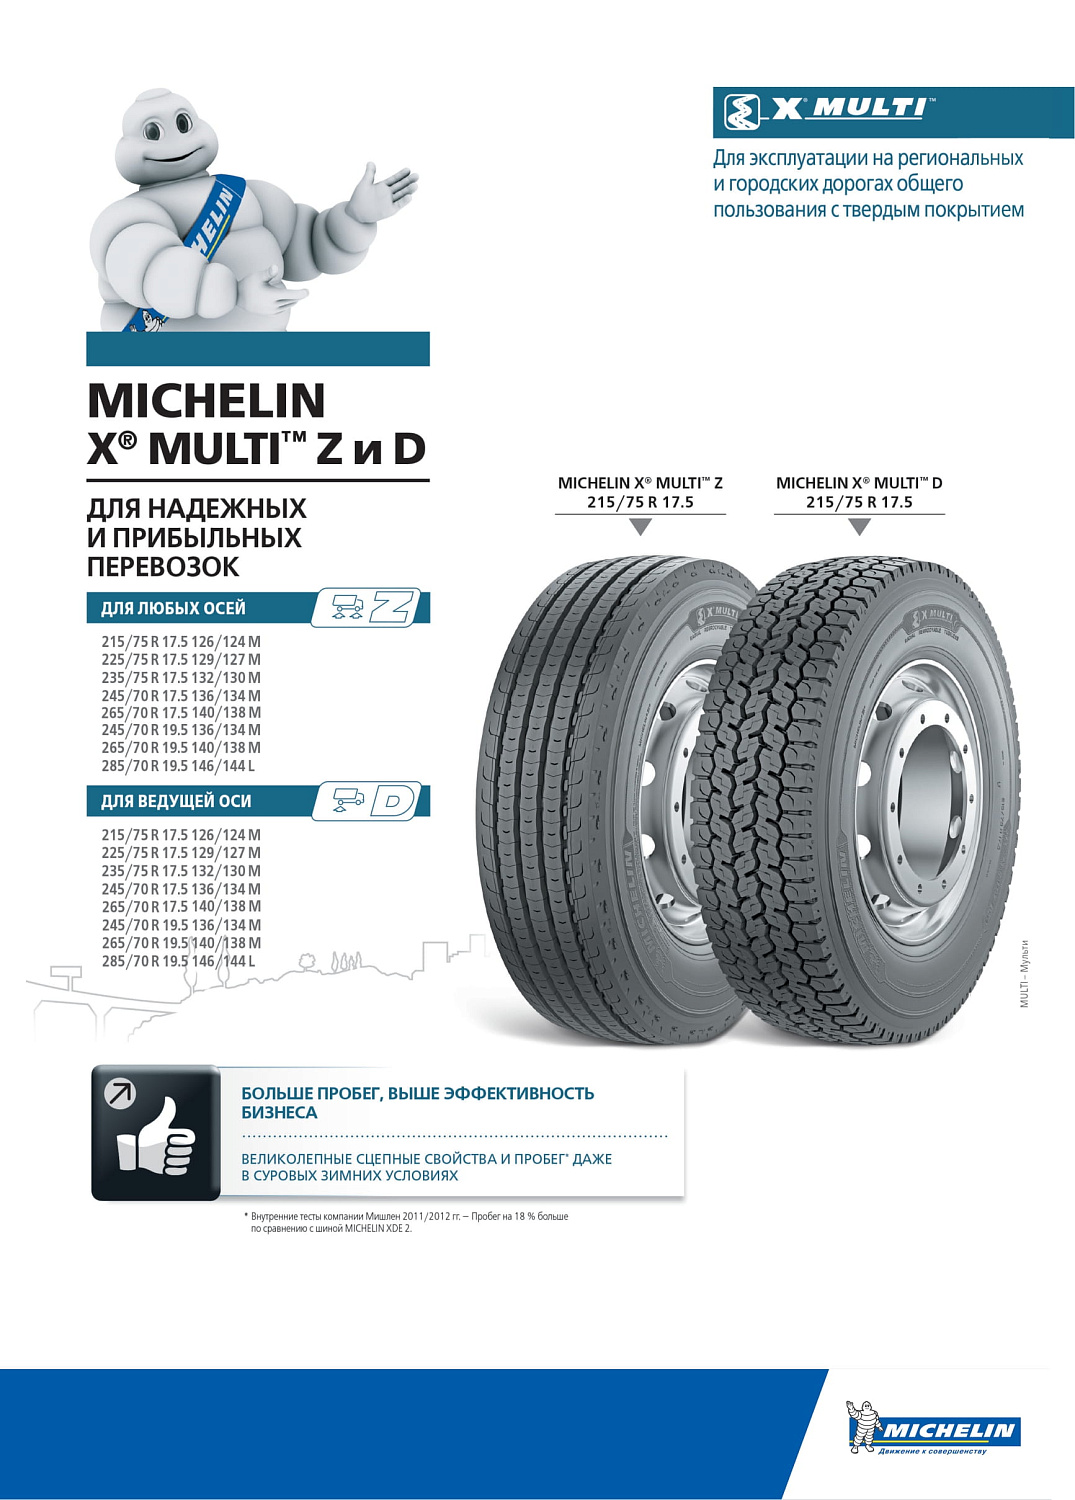 Michelin X Multi D 225/75 R17.5 TL